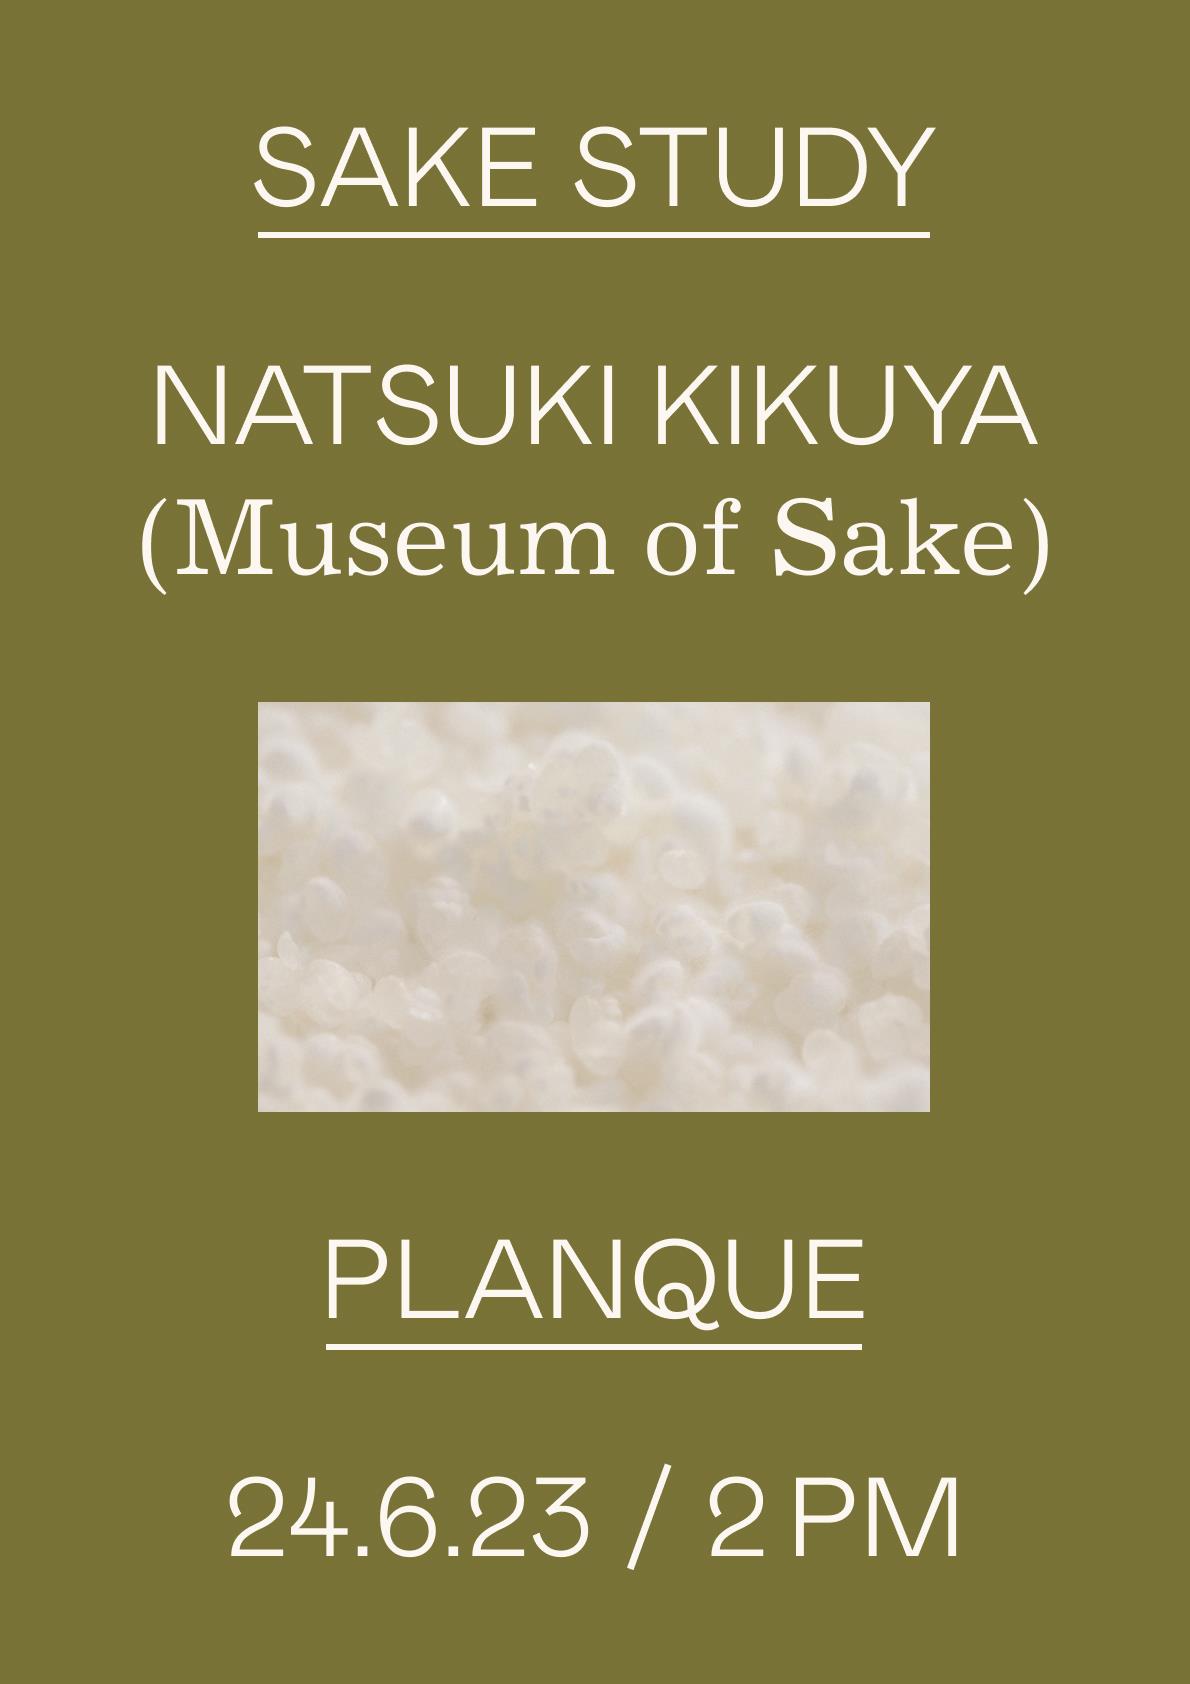 Workshop: Sake Study with Natsuki Kikuya